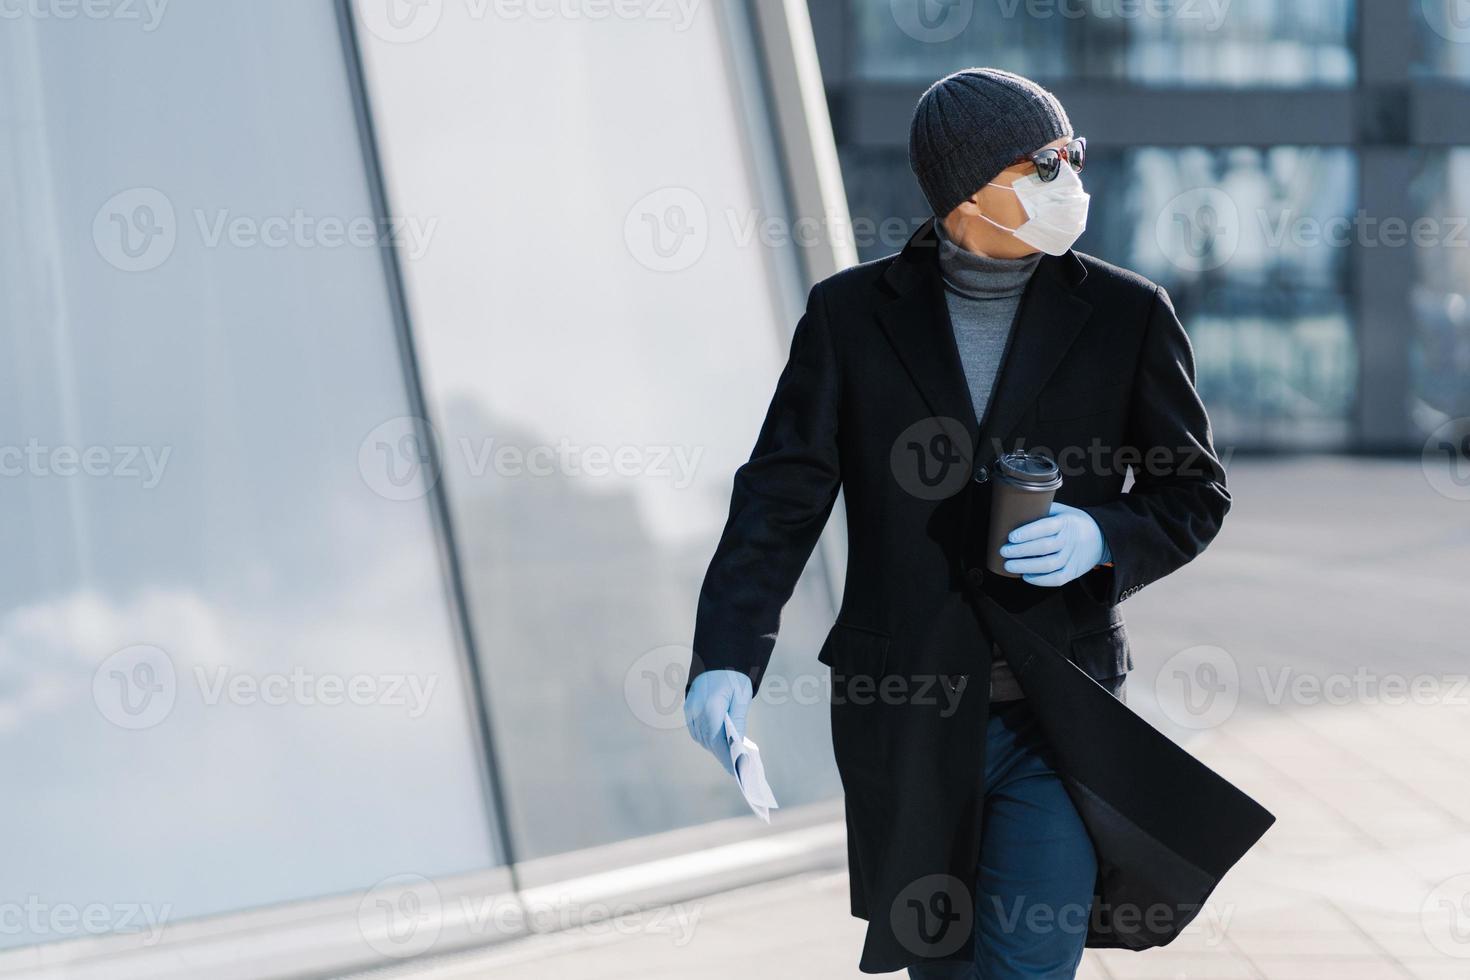 aufnahme eines jungen mannes, der draußen auf der straße posiert, zur seite schaut, eine sonnenbrille, gummihandschuhe, eine medizinische maske während des ausbruchs des coronavirus trägt, ein heißes getränk trinkt und versucht, während der epidemie öffentliche plätze zu meiden foto